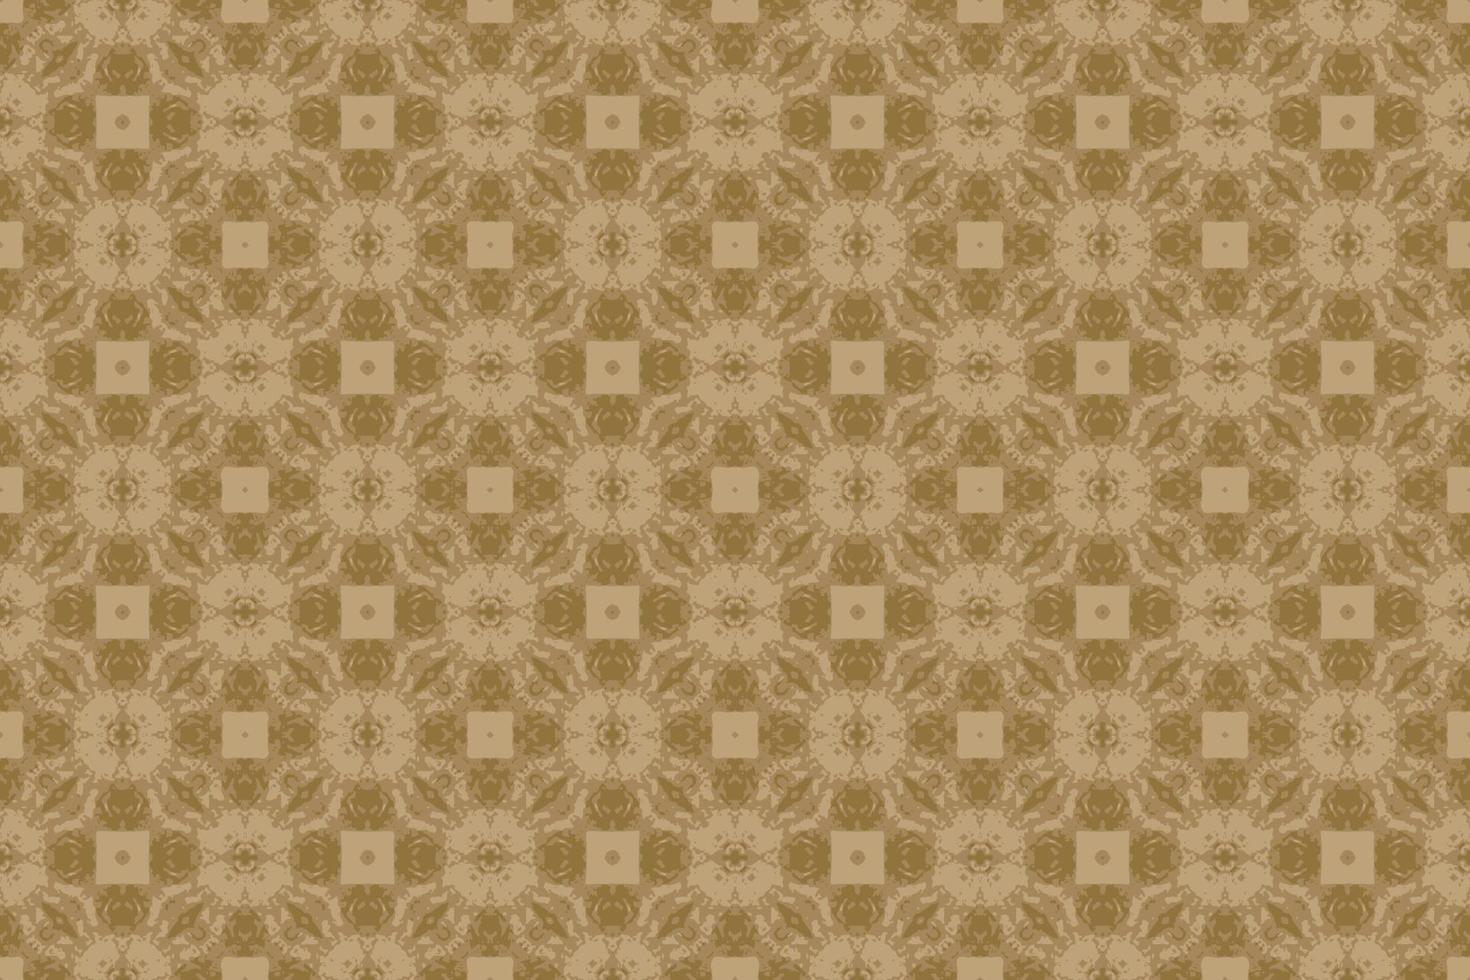 padrões abstratos sem costura, padrões geométricos e padrões de batik são projetados para uso em interiores, papel de parede, tecido, cortina, carpete, roupas, batik, cetim, fundo e estilo de bordado. vetor